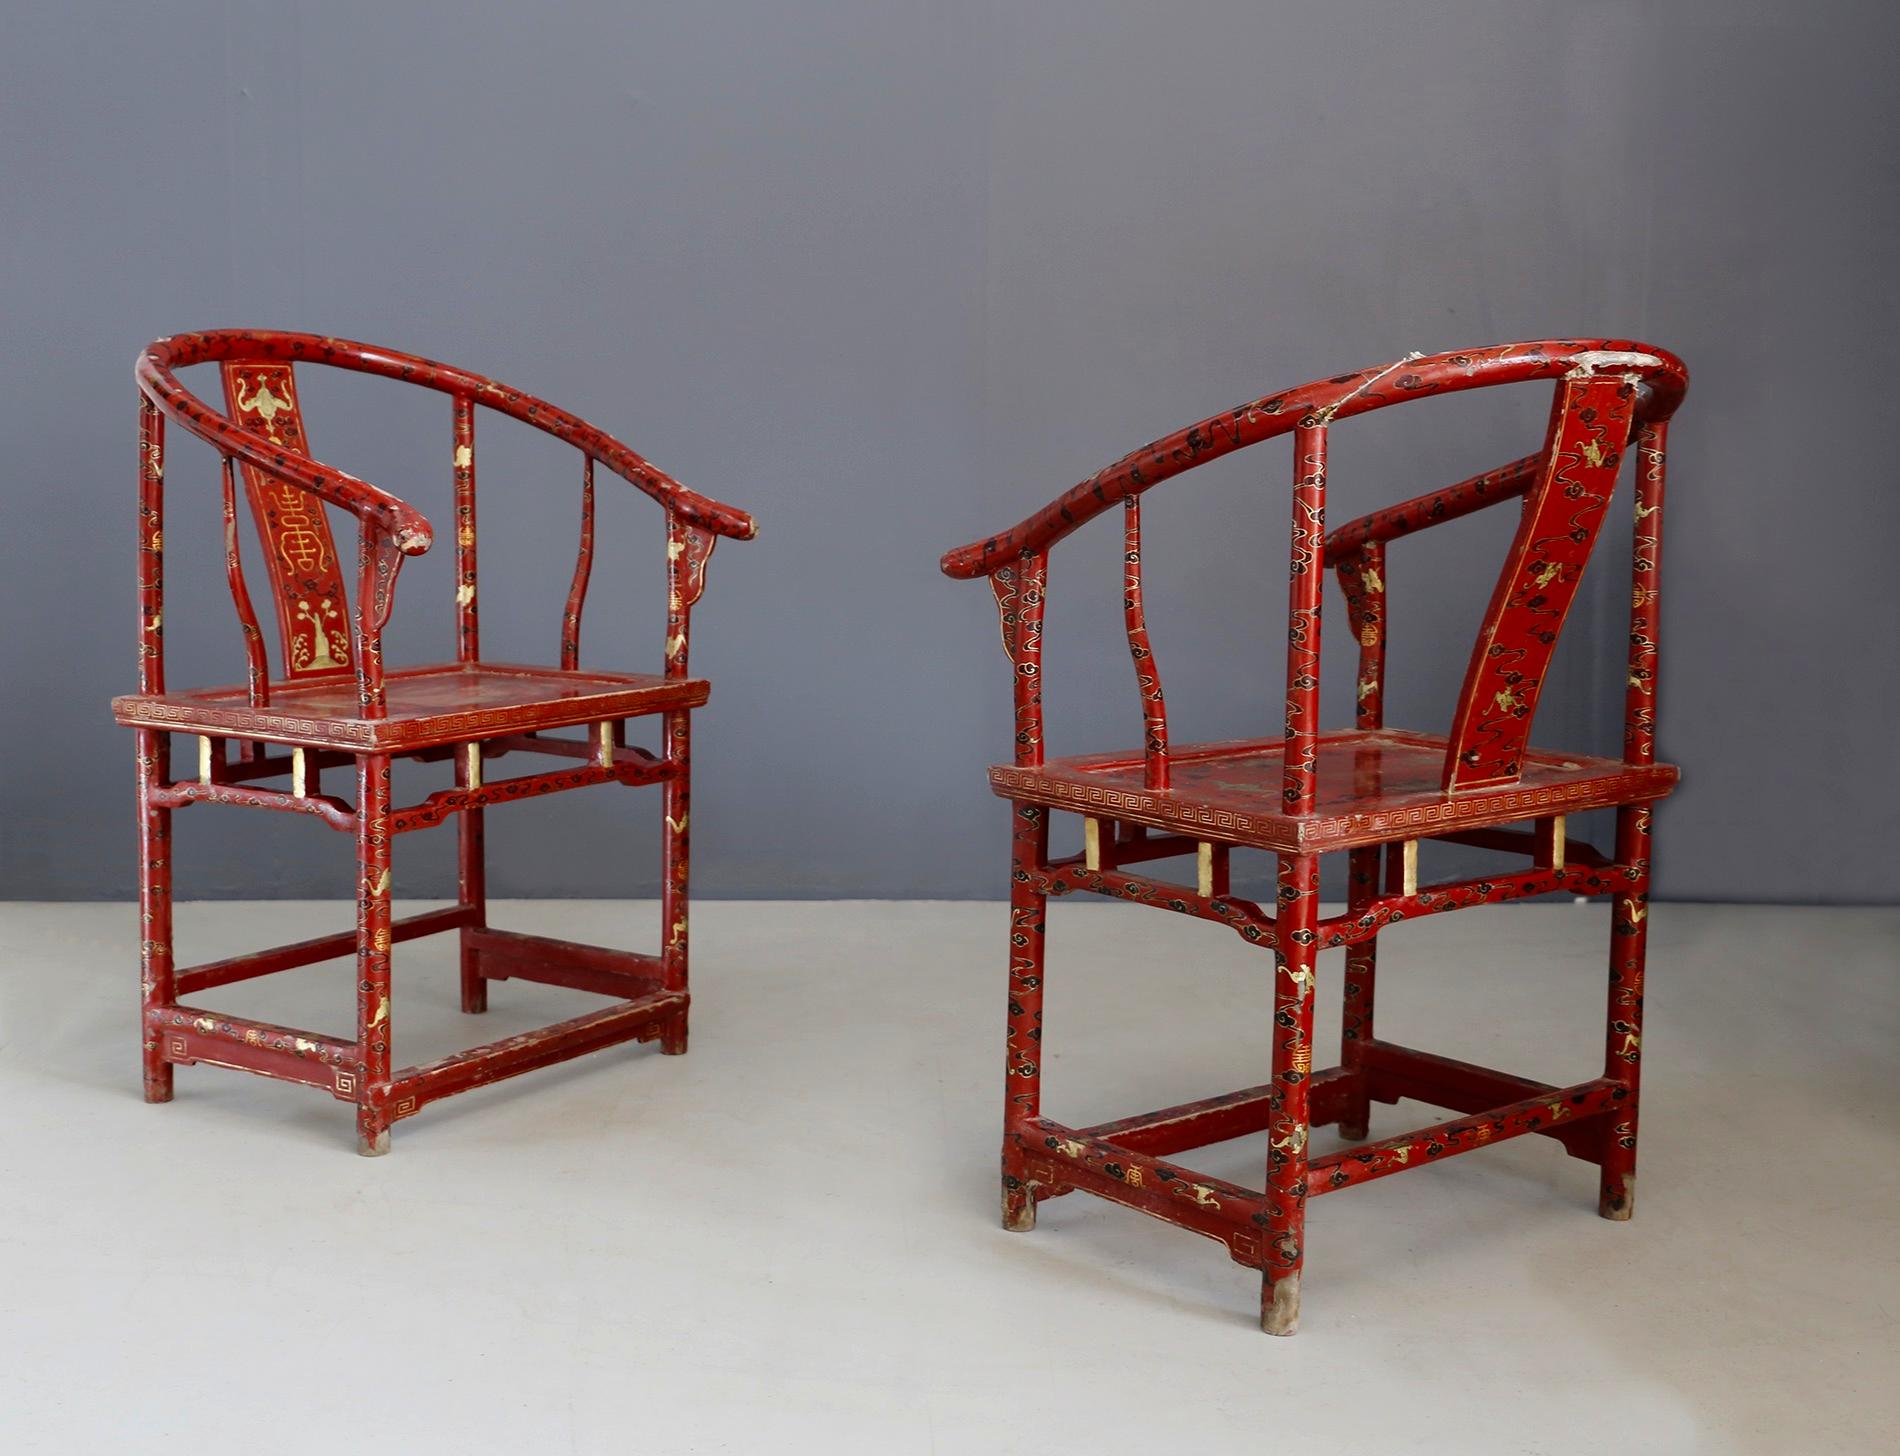 Großes, sehr elegantes und gut verarbeitetes Paar chinesischer Sessel aus den späten 1800er Jahren. Das Sesselpaar ist aus gebogenem Holz. Die geschwungene Rückenlehne ist mit Friesen versehen, auf denen Pflanzenfiguren und Ornamente dargestellt